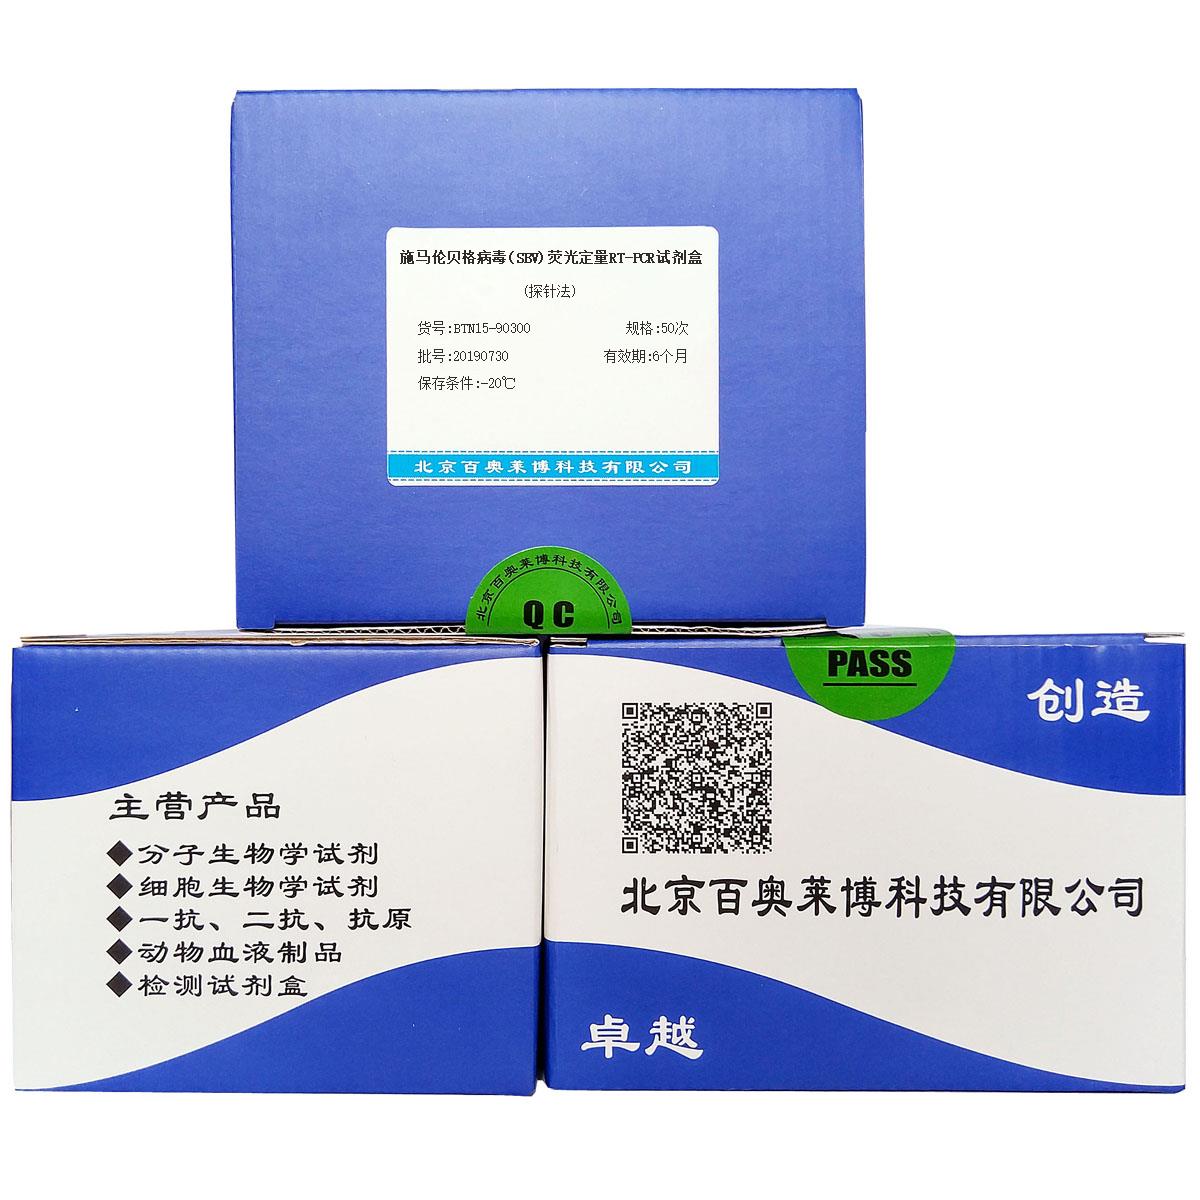 施马伦贝格病毒(SBV)荧光定量RT-PCR试剂盒(探针法)